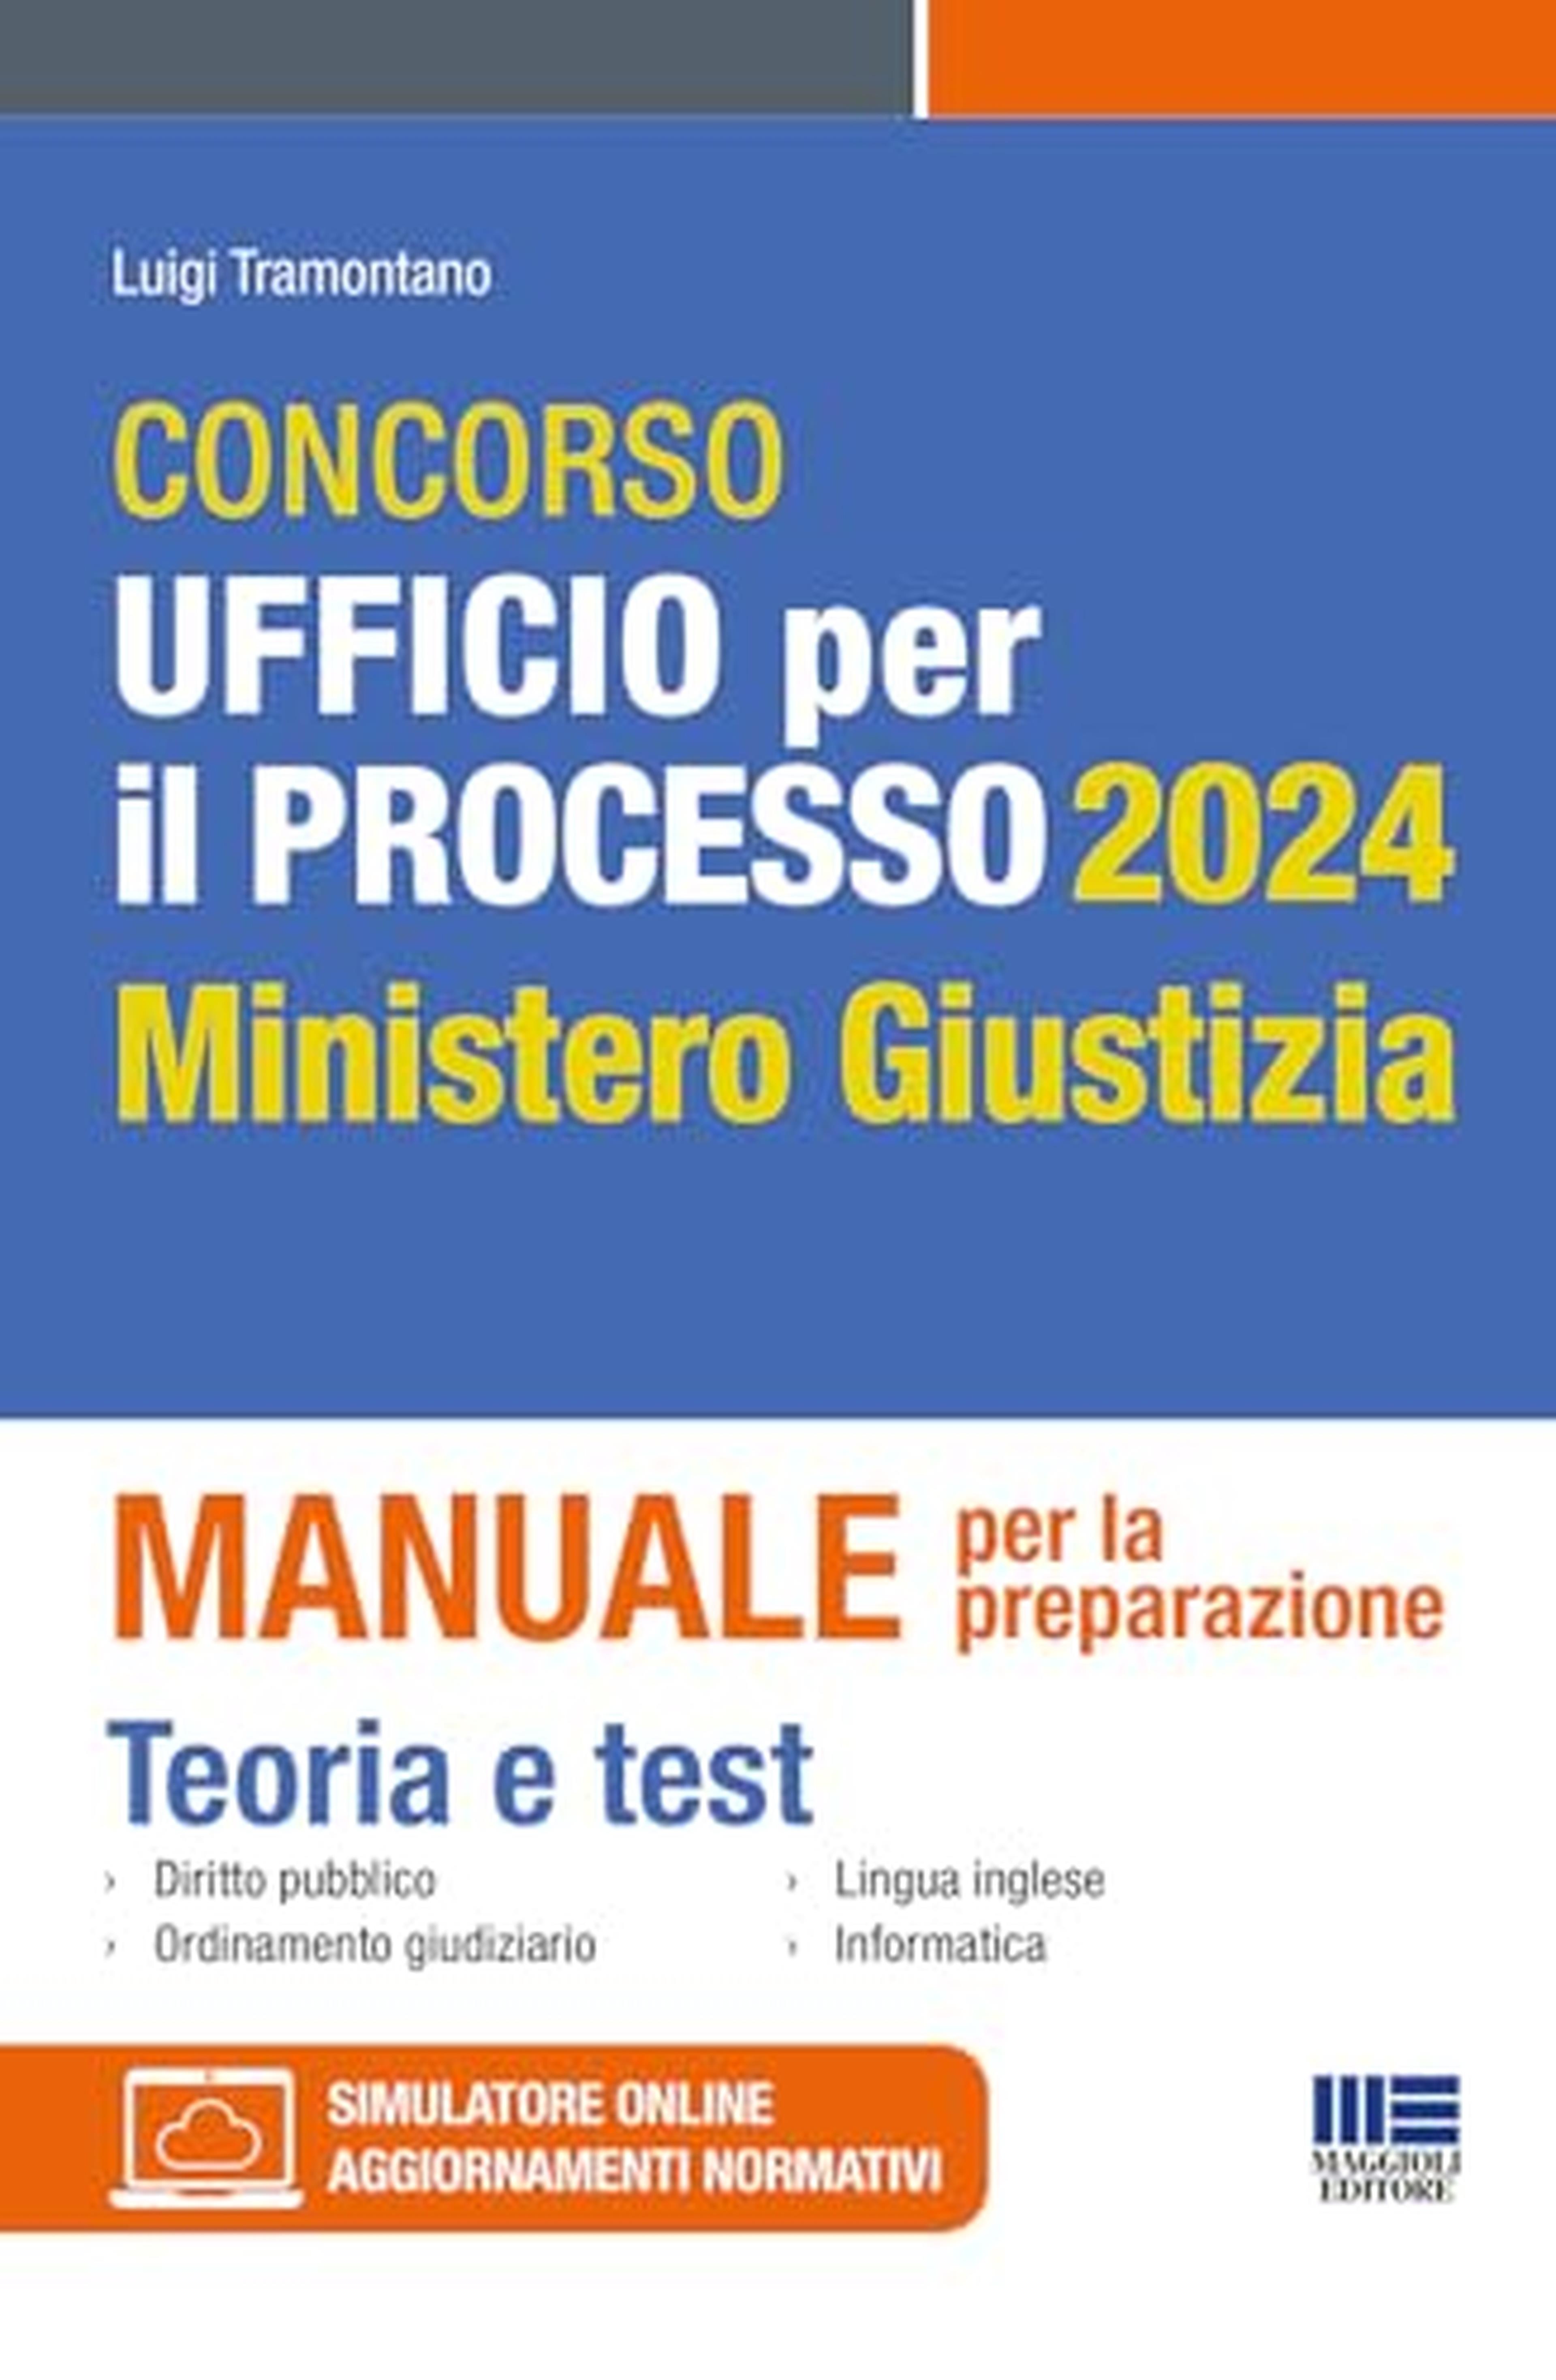 Concorso Ufficio per il processo 2024 Ministero Giustizia - Manuale per la preparazione